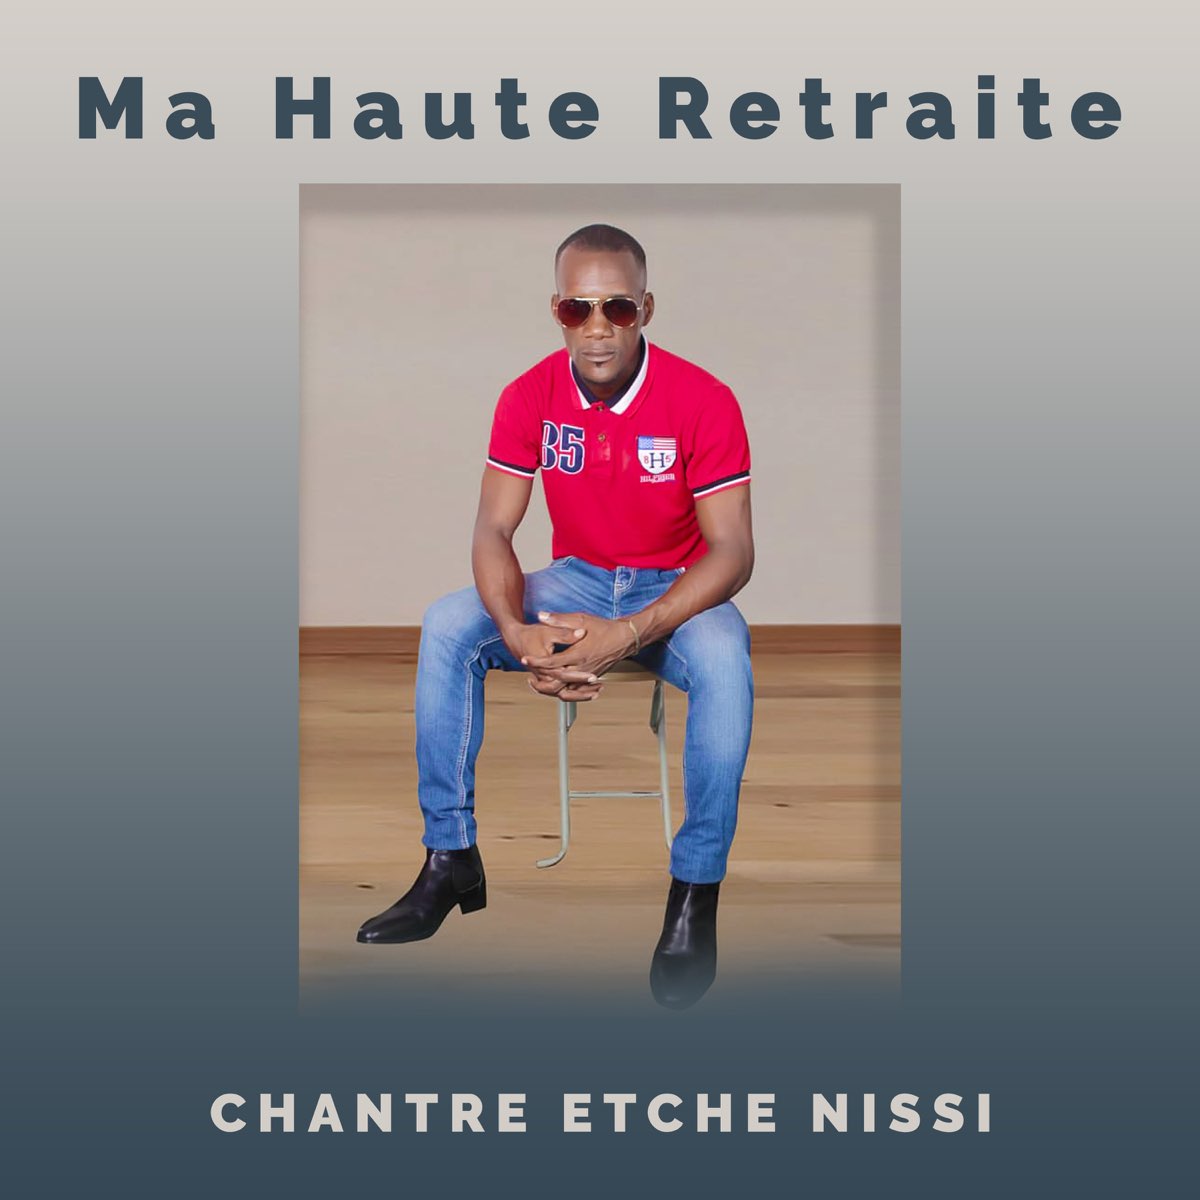 Ma haute retraite - Single – Album par Chantre Etche Nissi – Apple Music